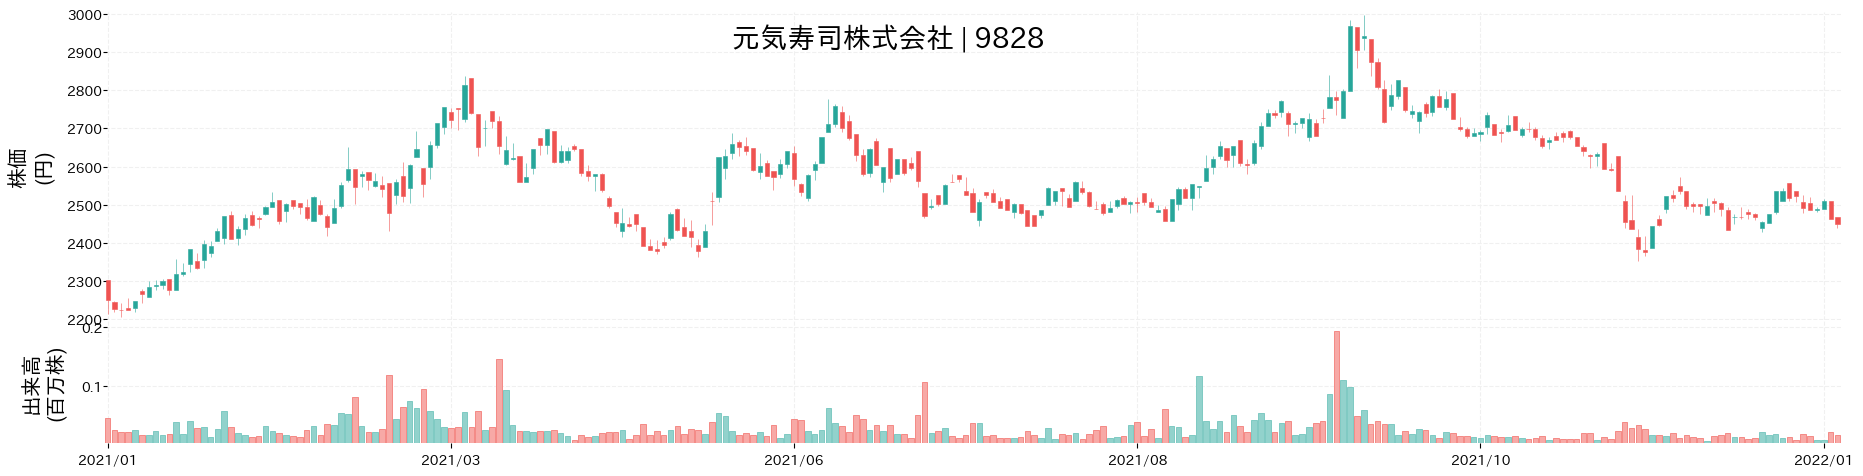 元気寿司の株価推移(2021)